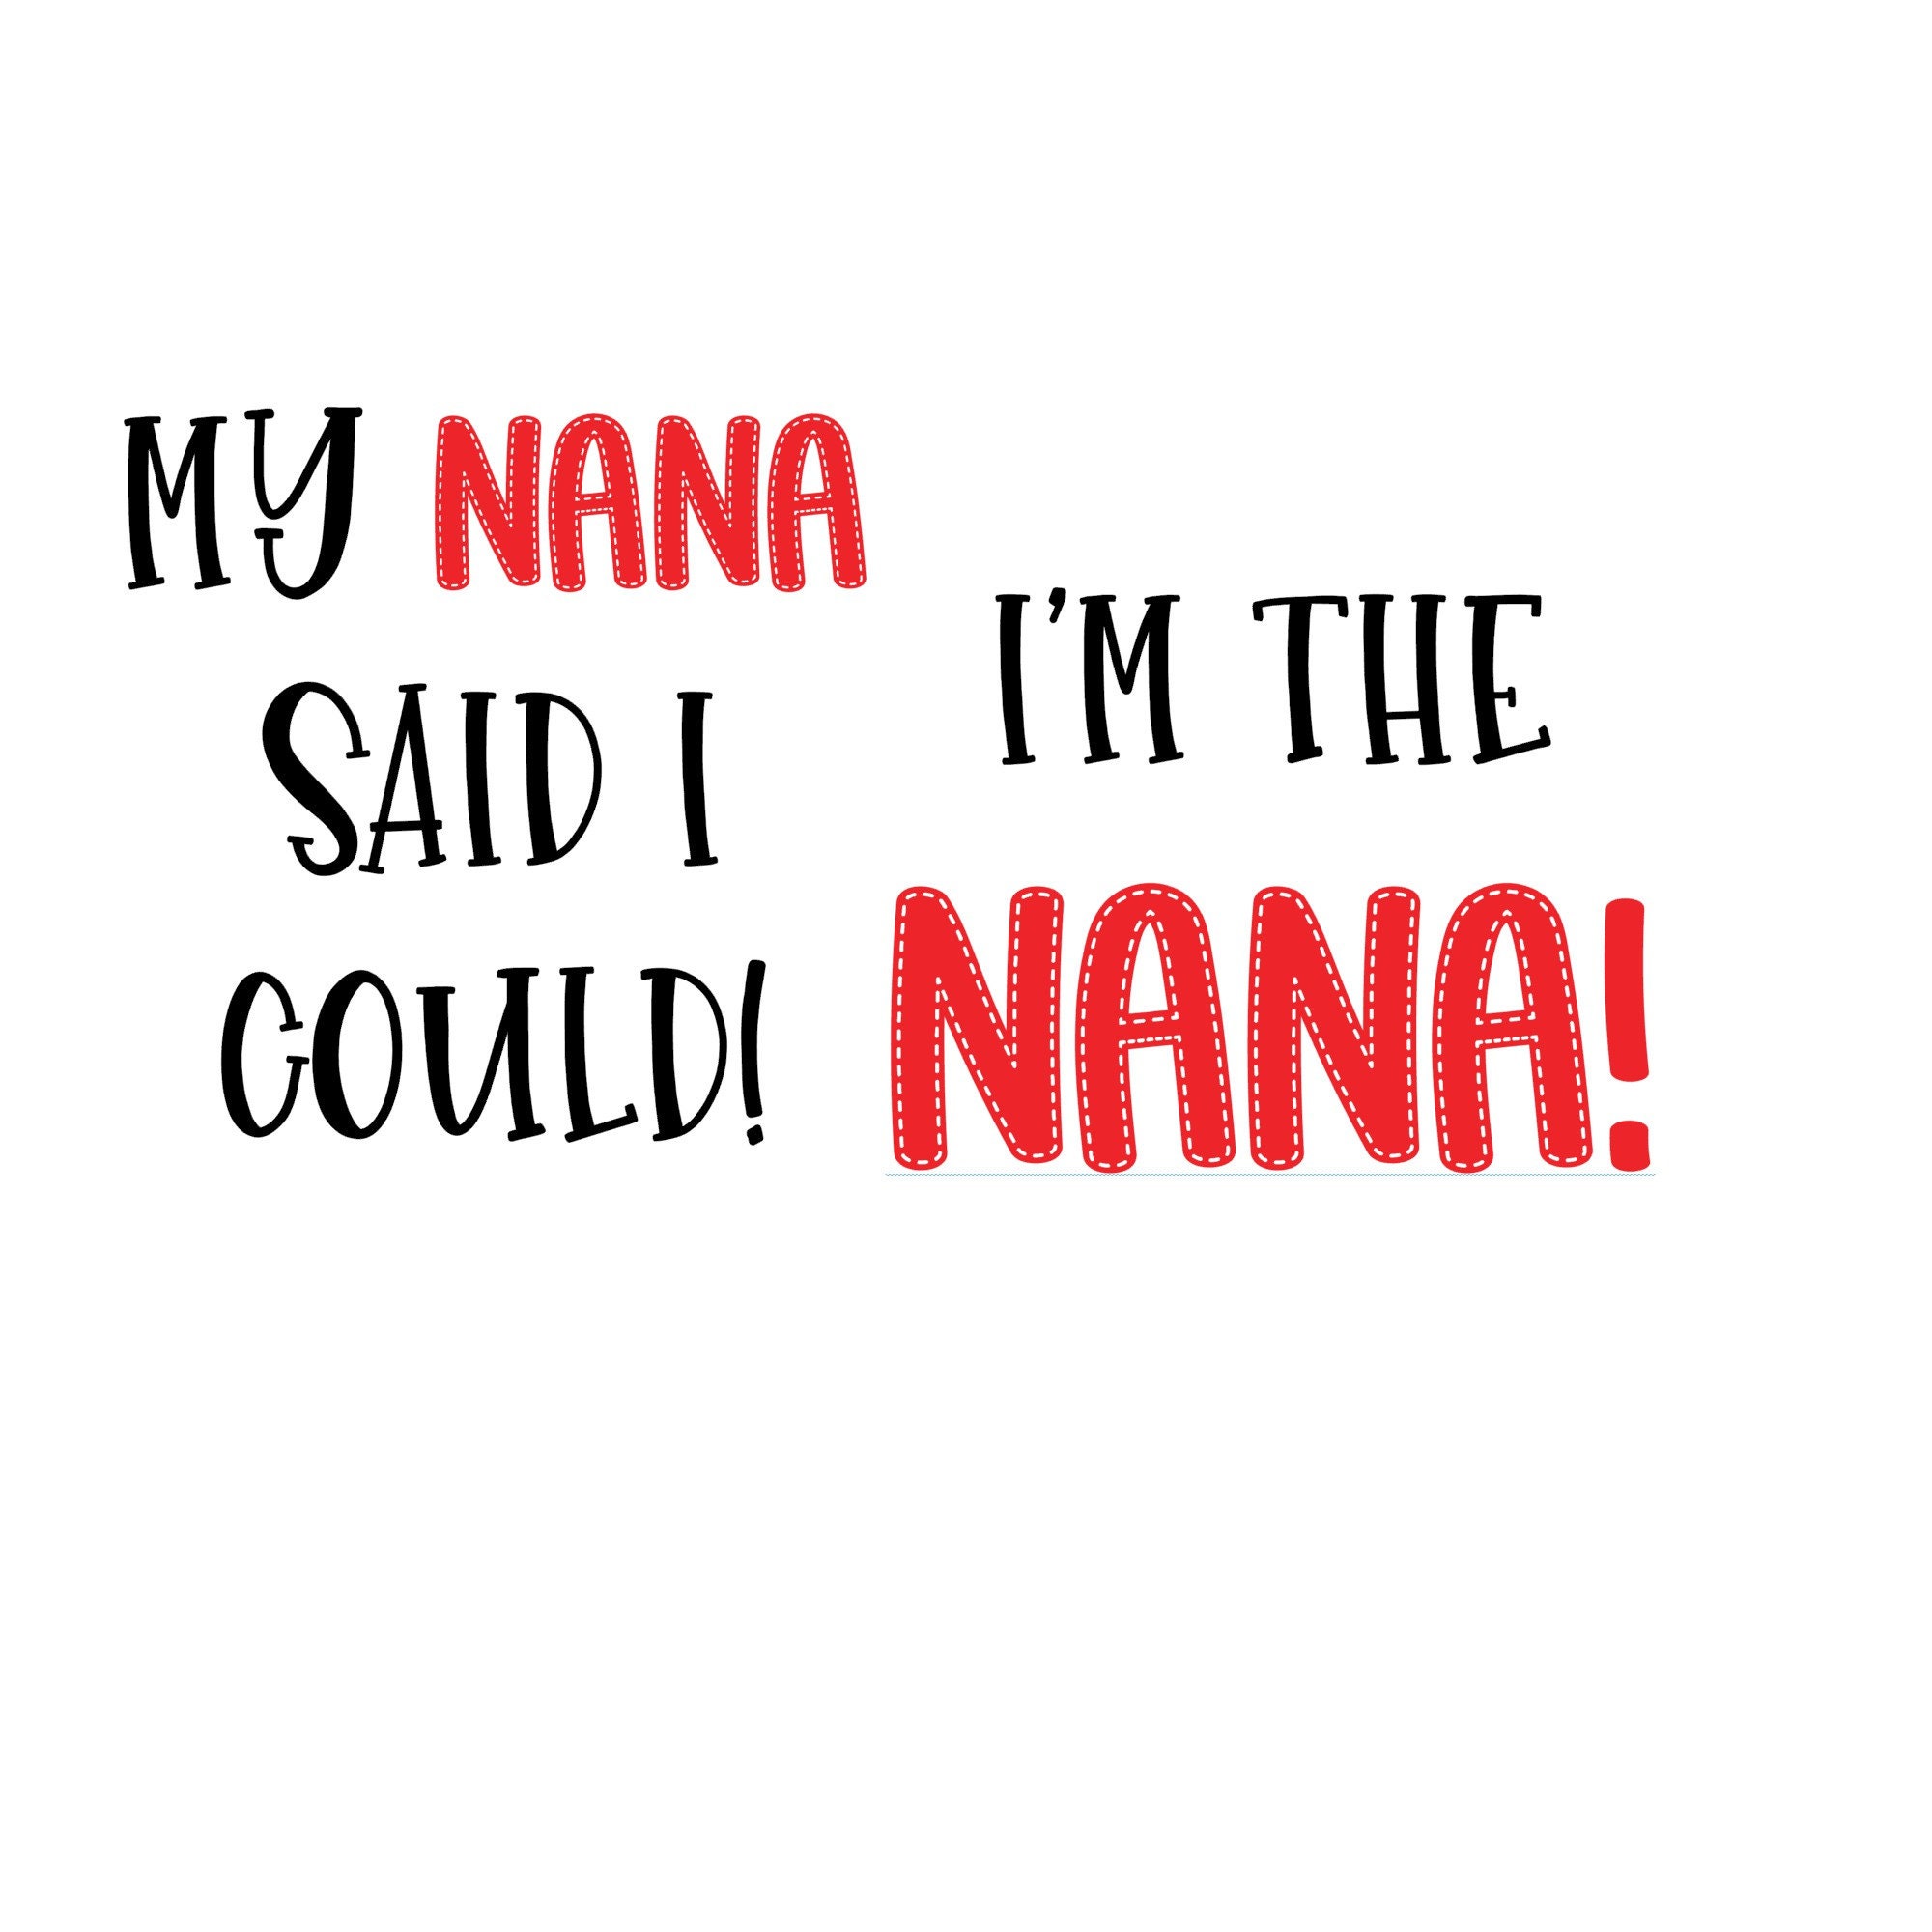 Download Nana Said I Could/I'm The Nana Duo SVG Download/Shirt/Bib ...